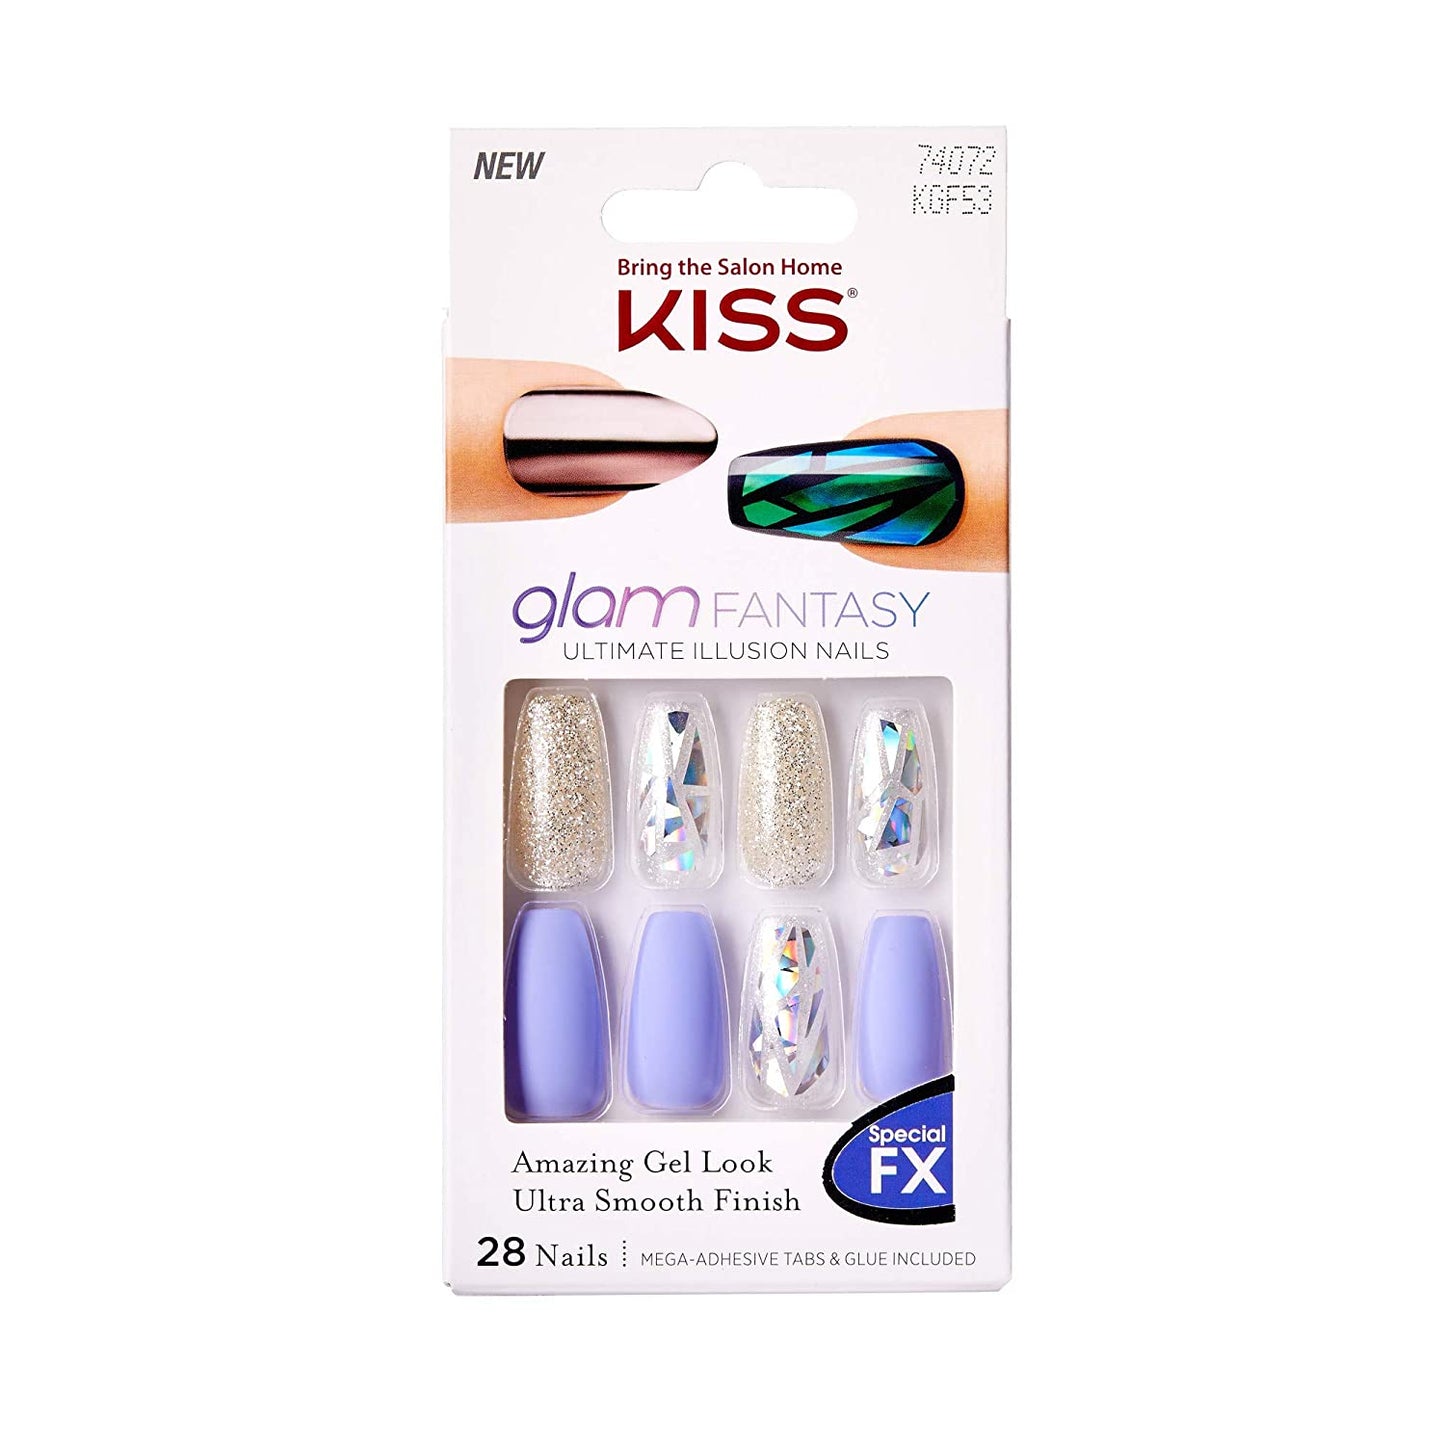 KISS Glam Fantasy Nails